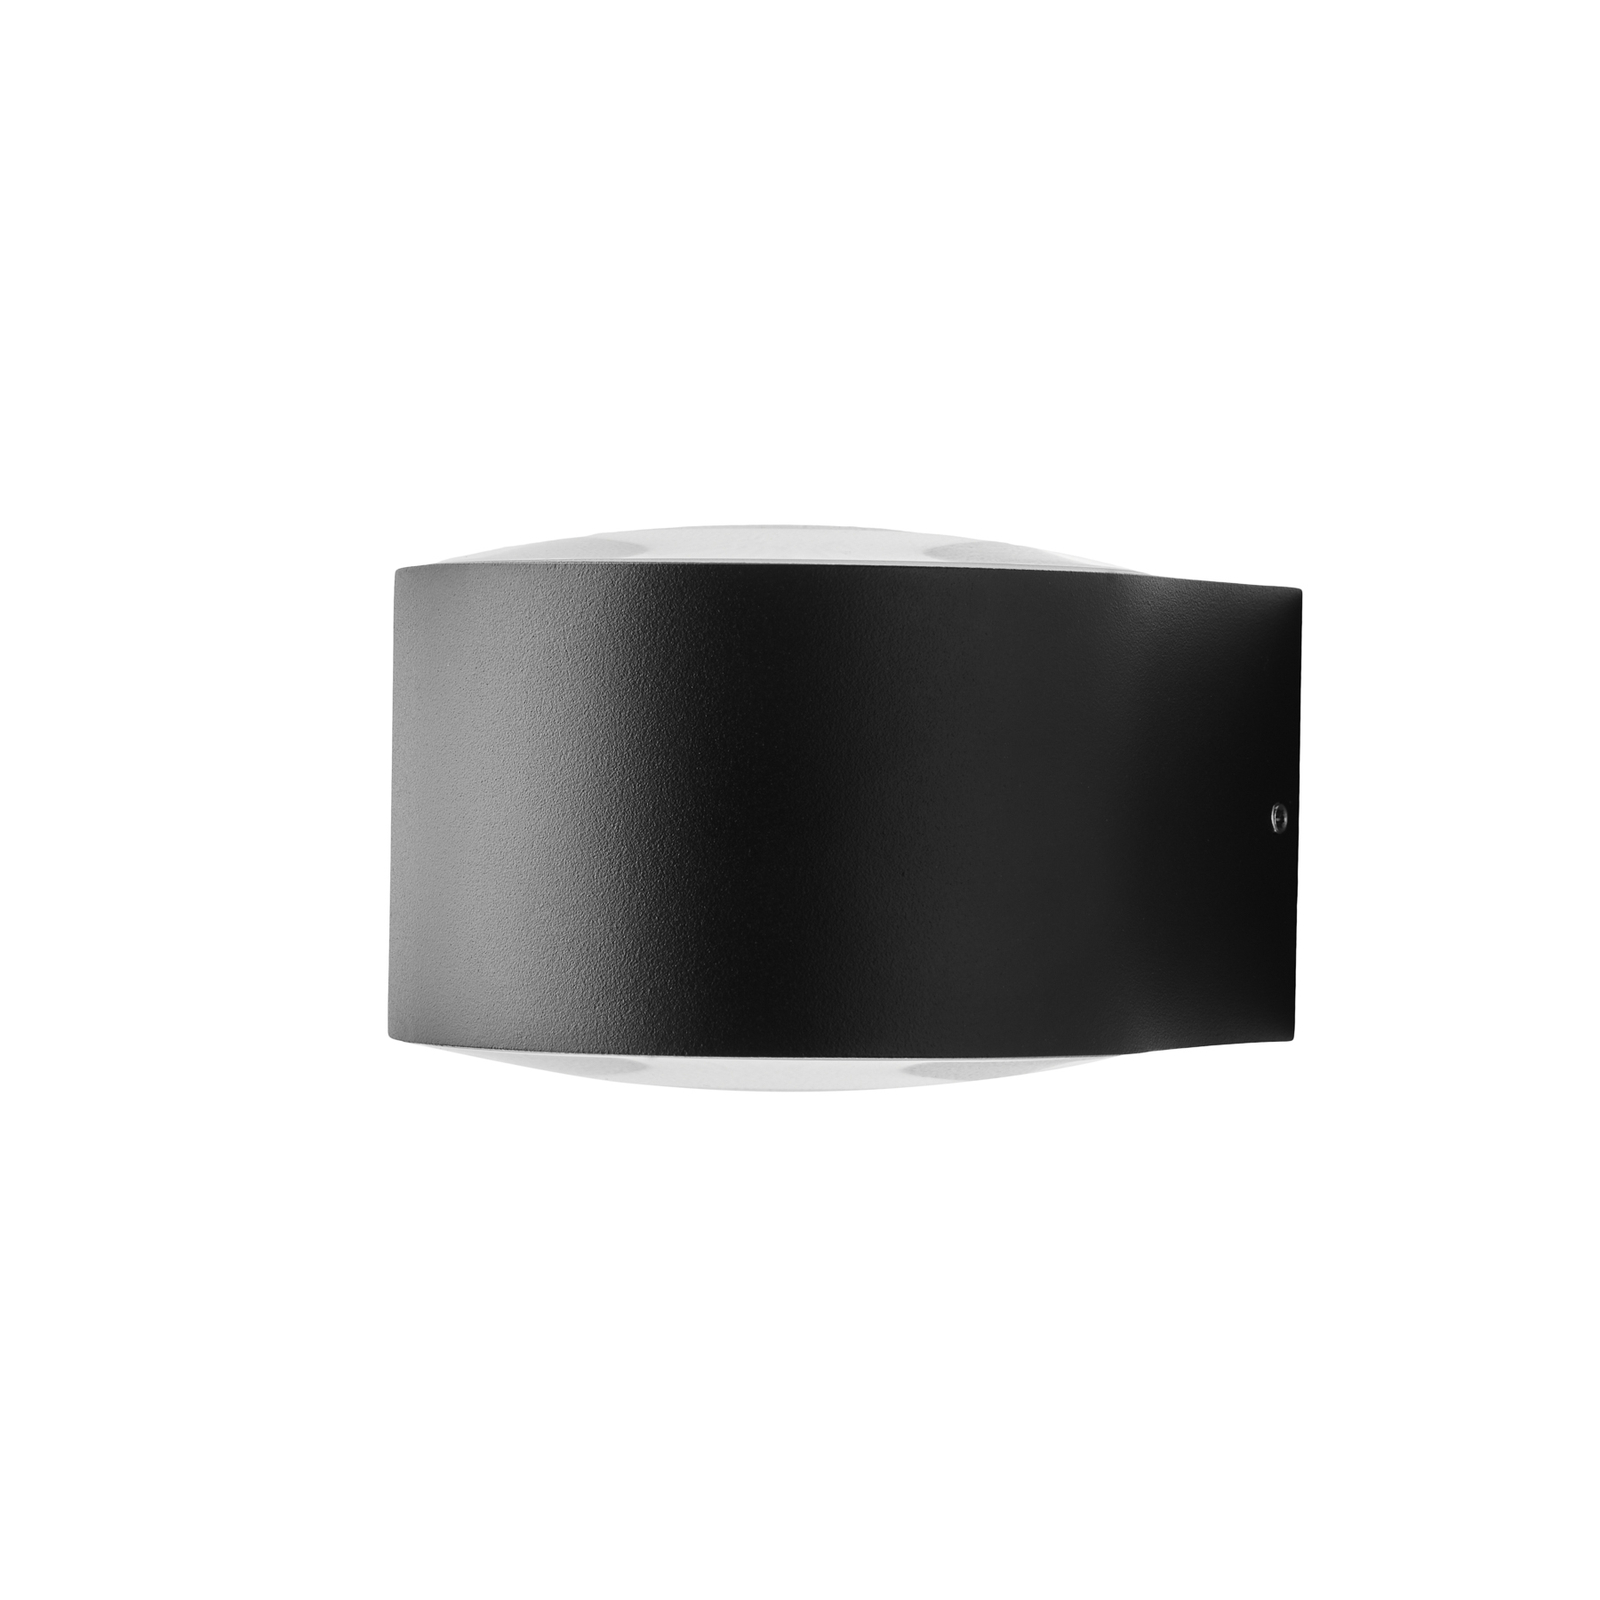 LOOM DESIGN Frey LED sieninis šviestuvas IP65 2x6W juodas